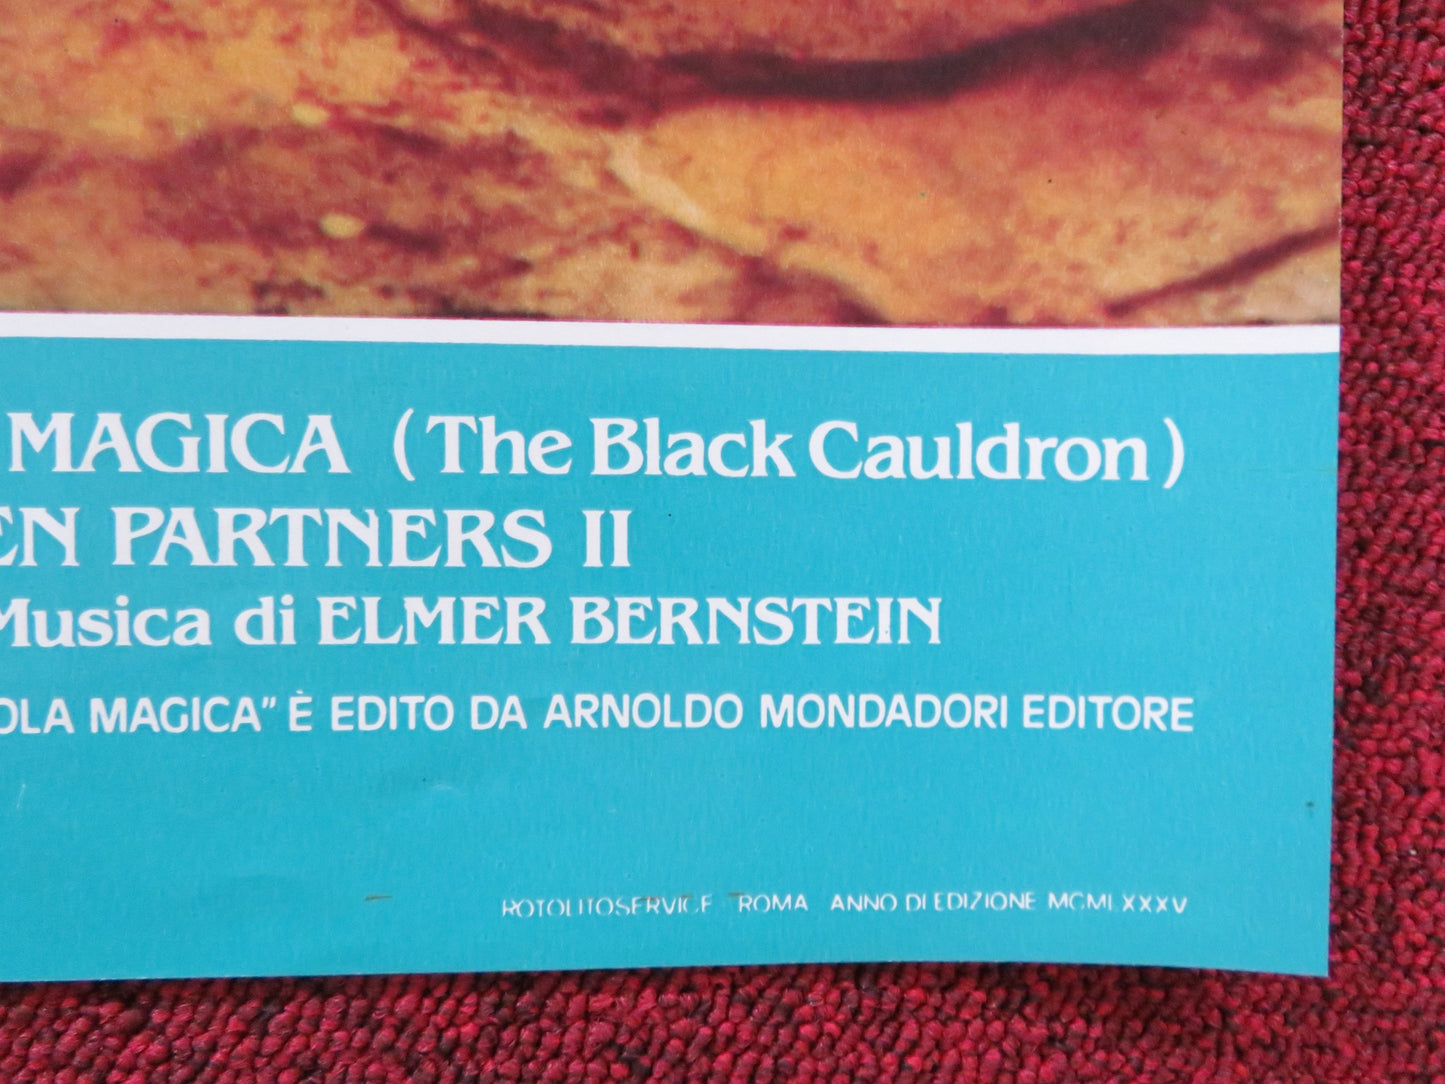 THE BLACK CAULDRON - C ITALIAN FOTOBUSTA POSTER DISNEY GRANT BARDSLEY 1985